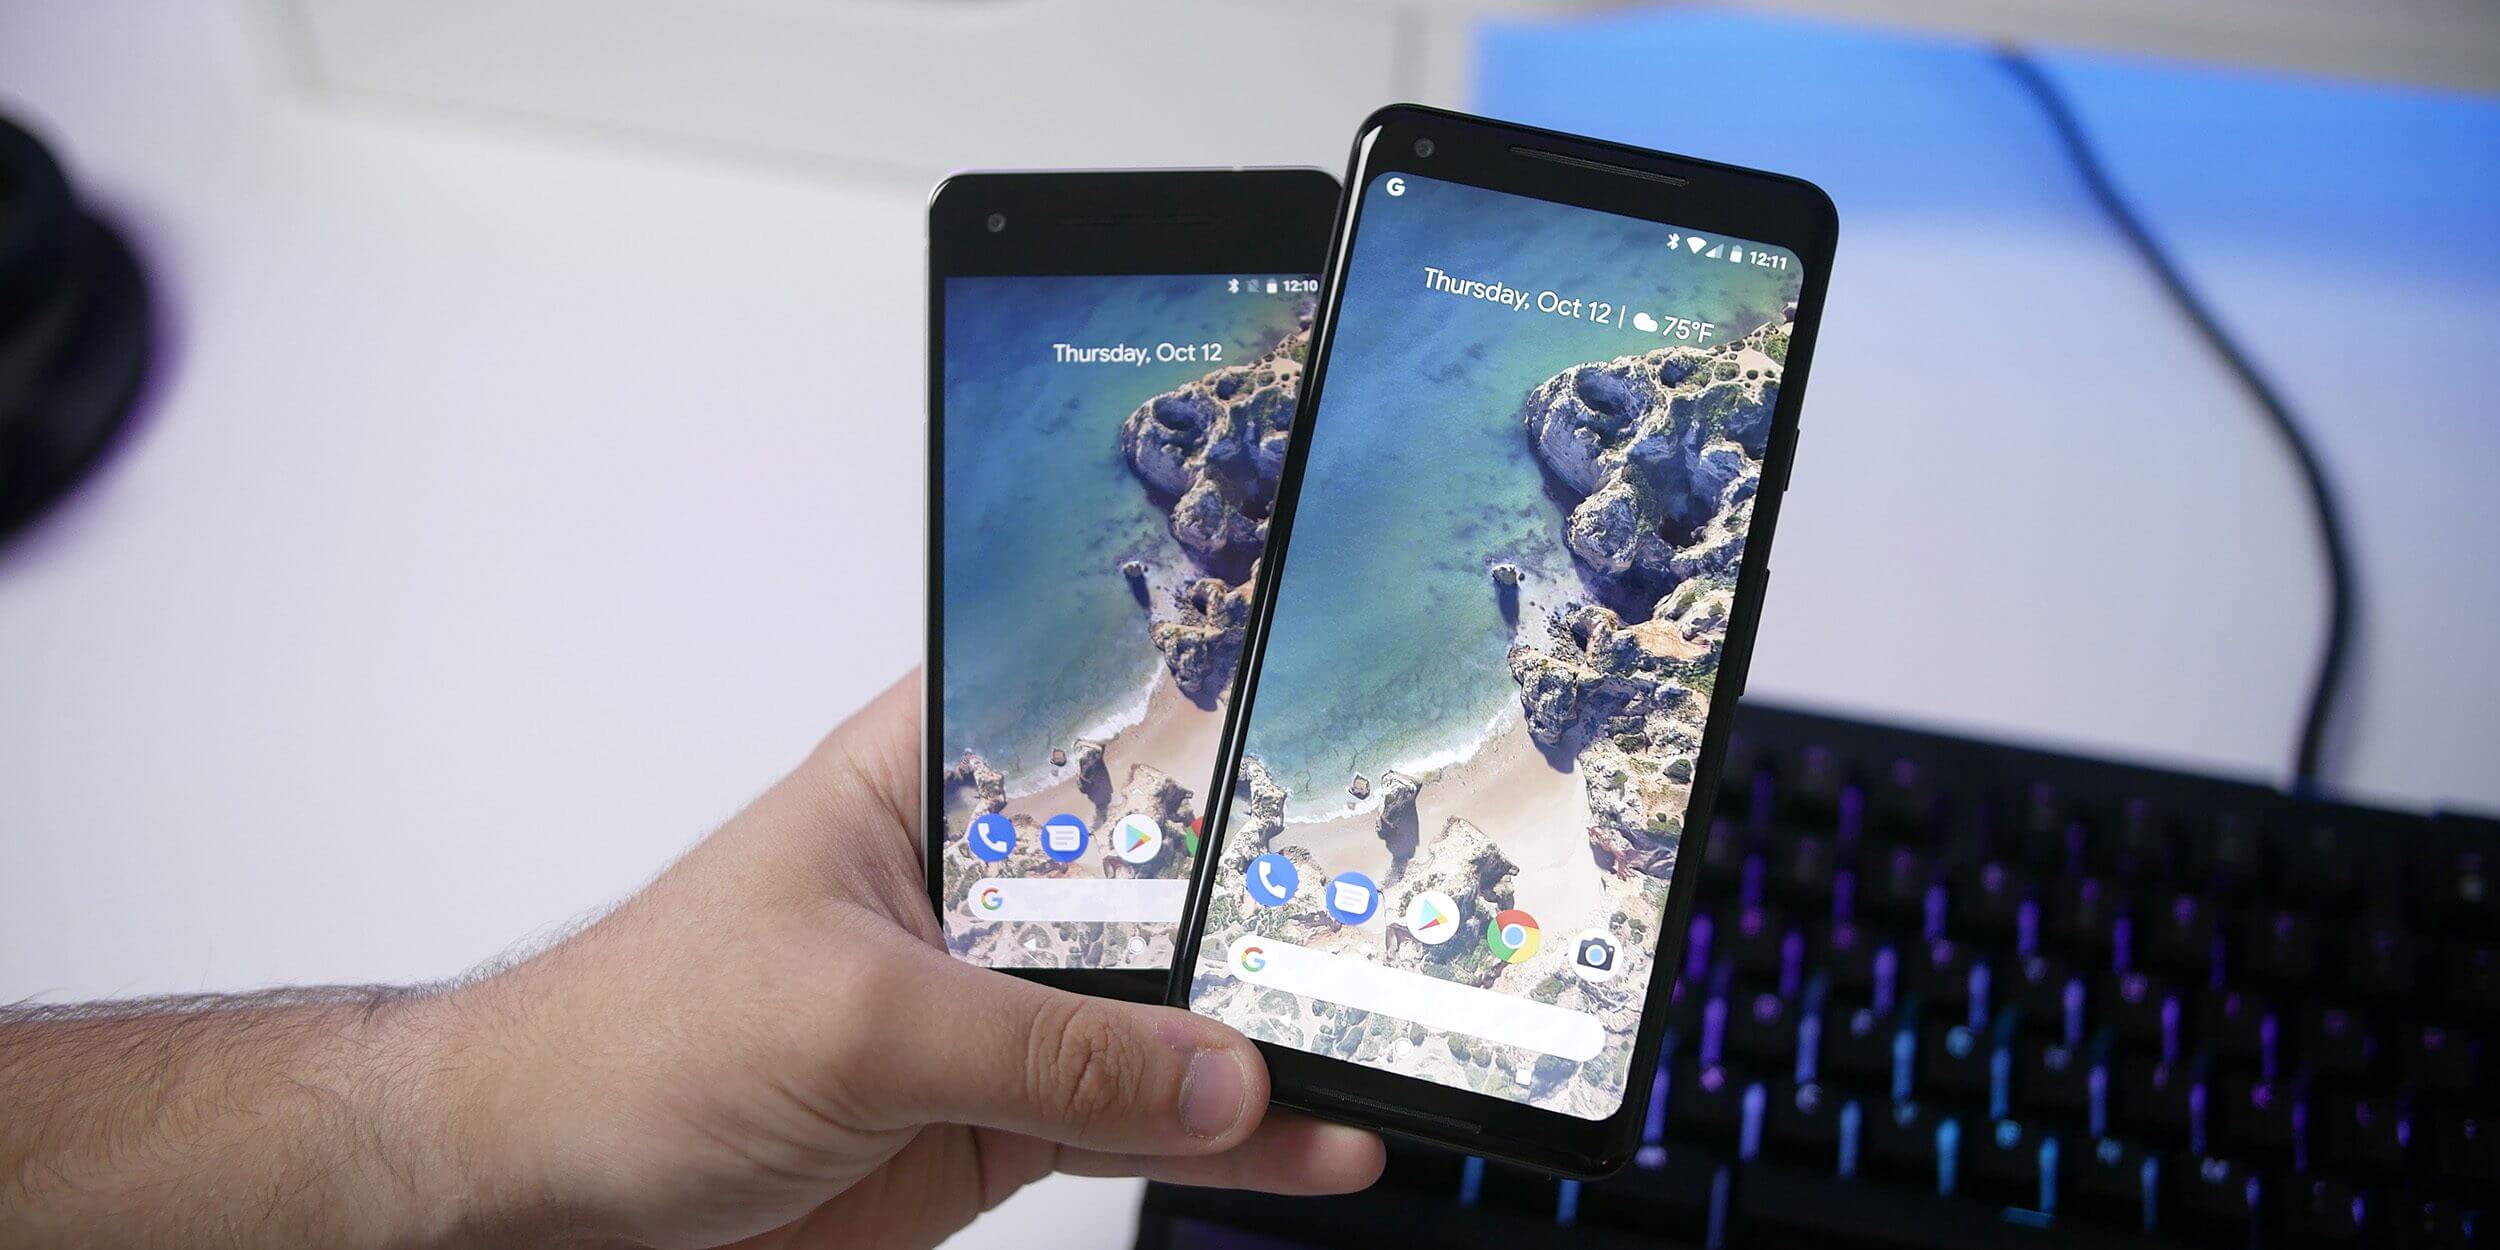 pixel 2 smartphones